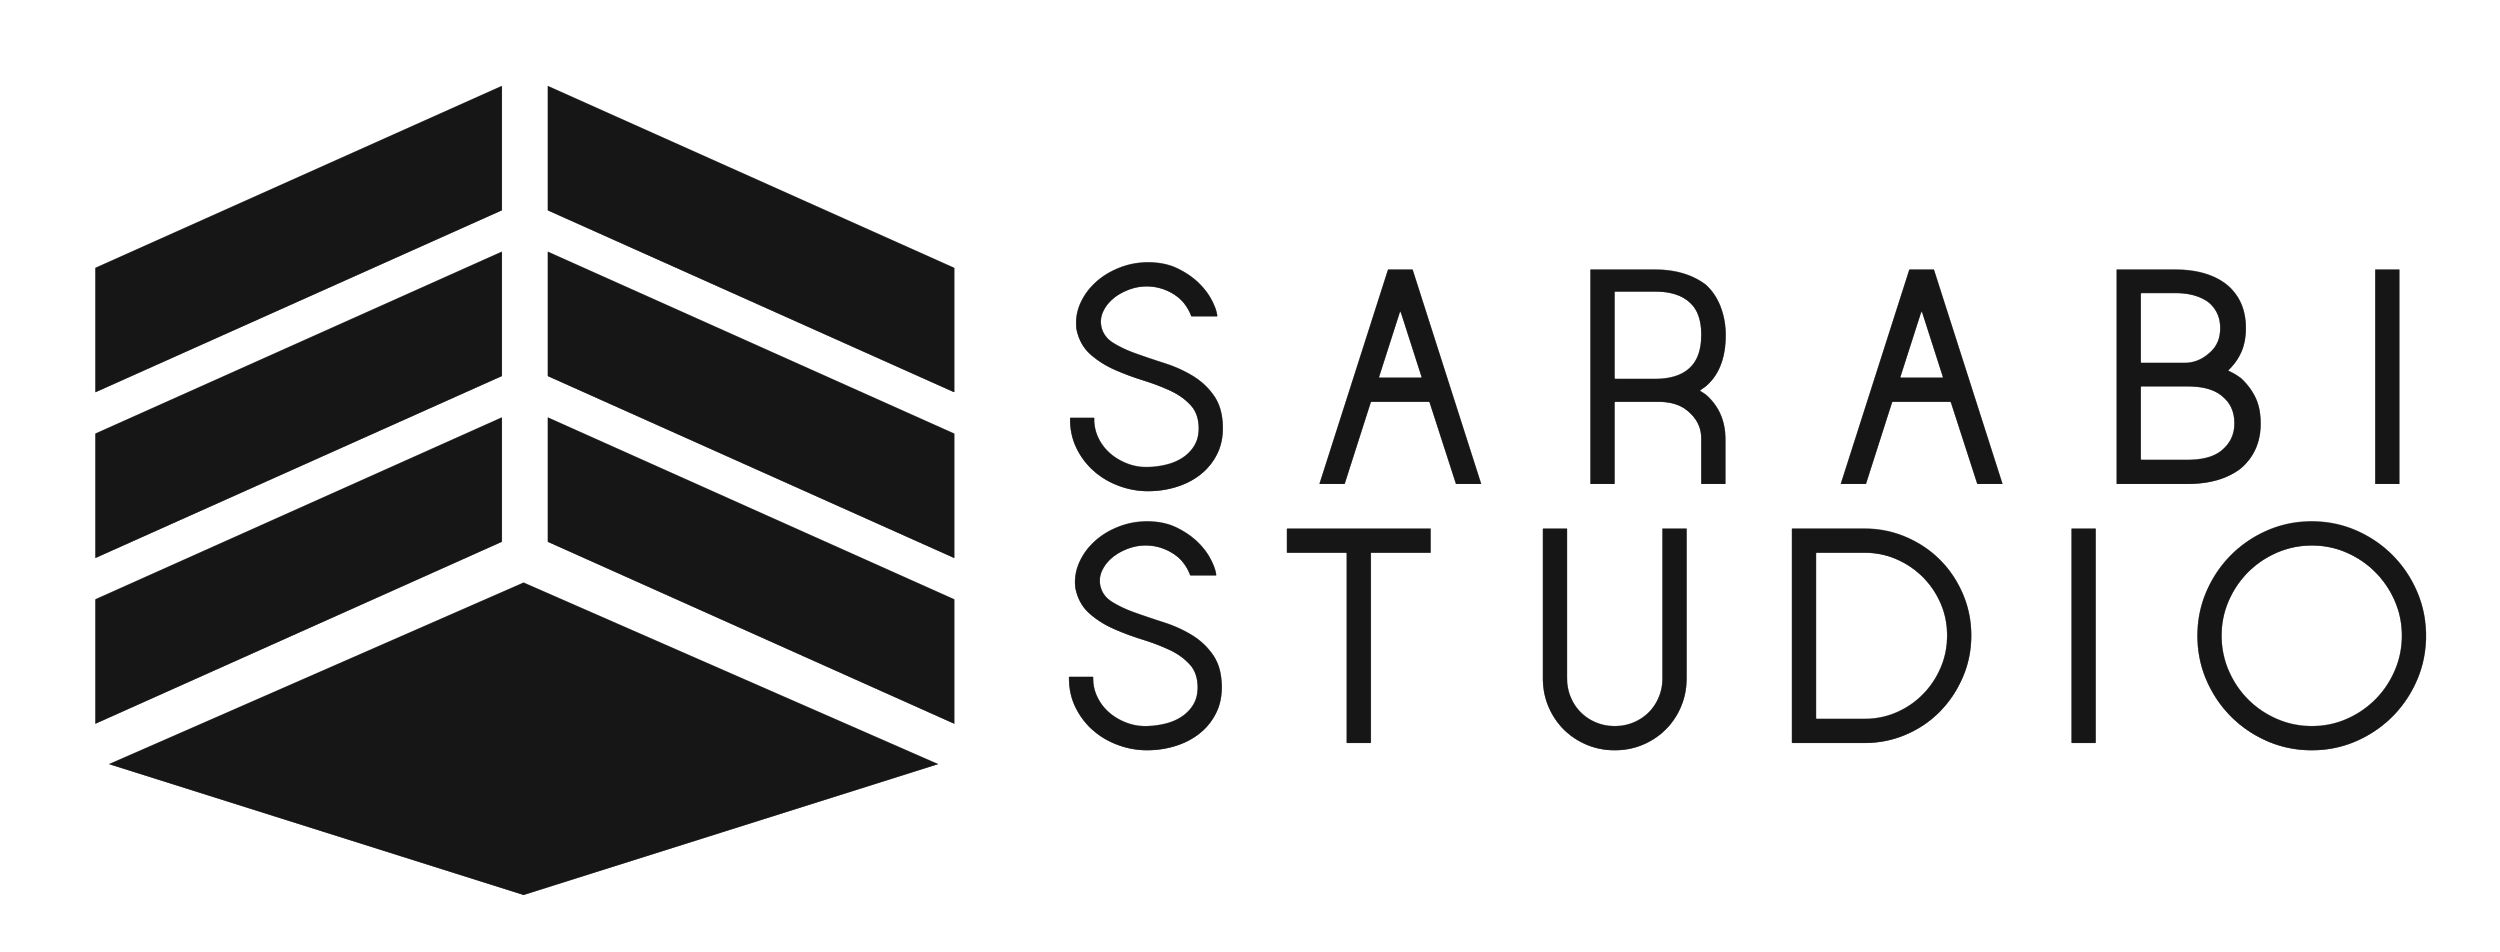 Sarabi Studio